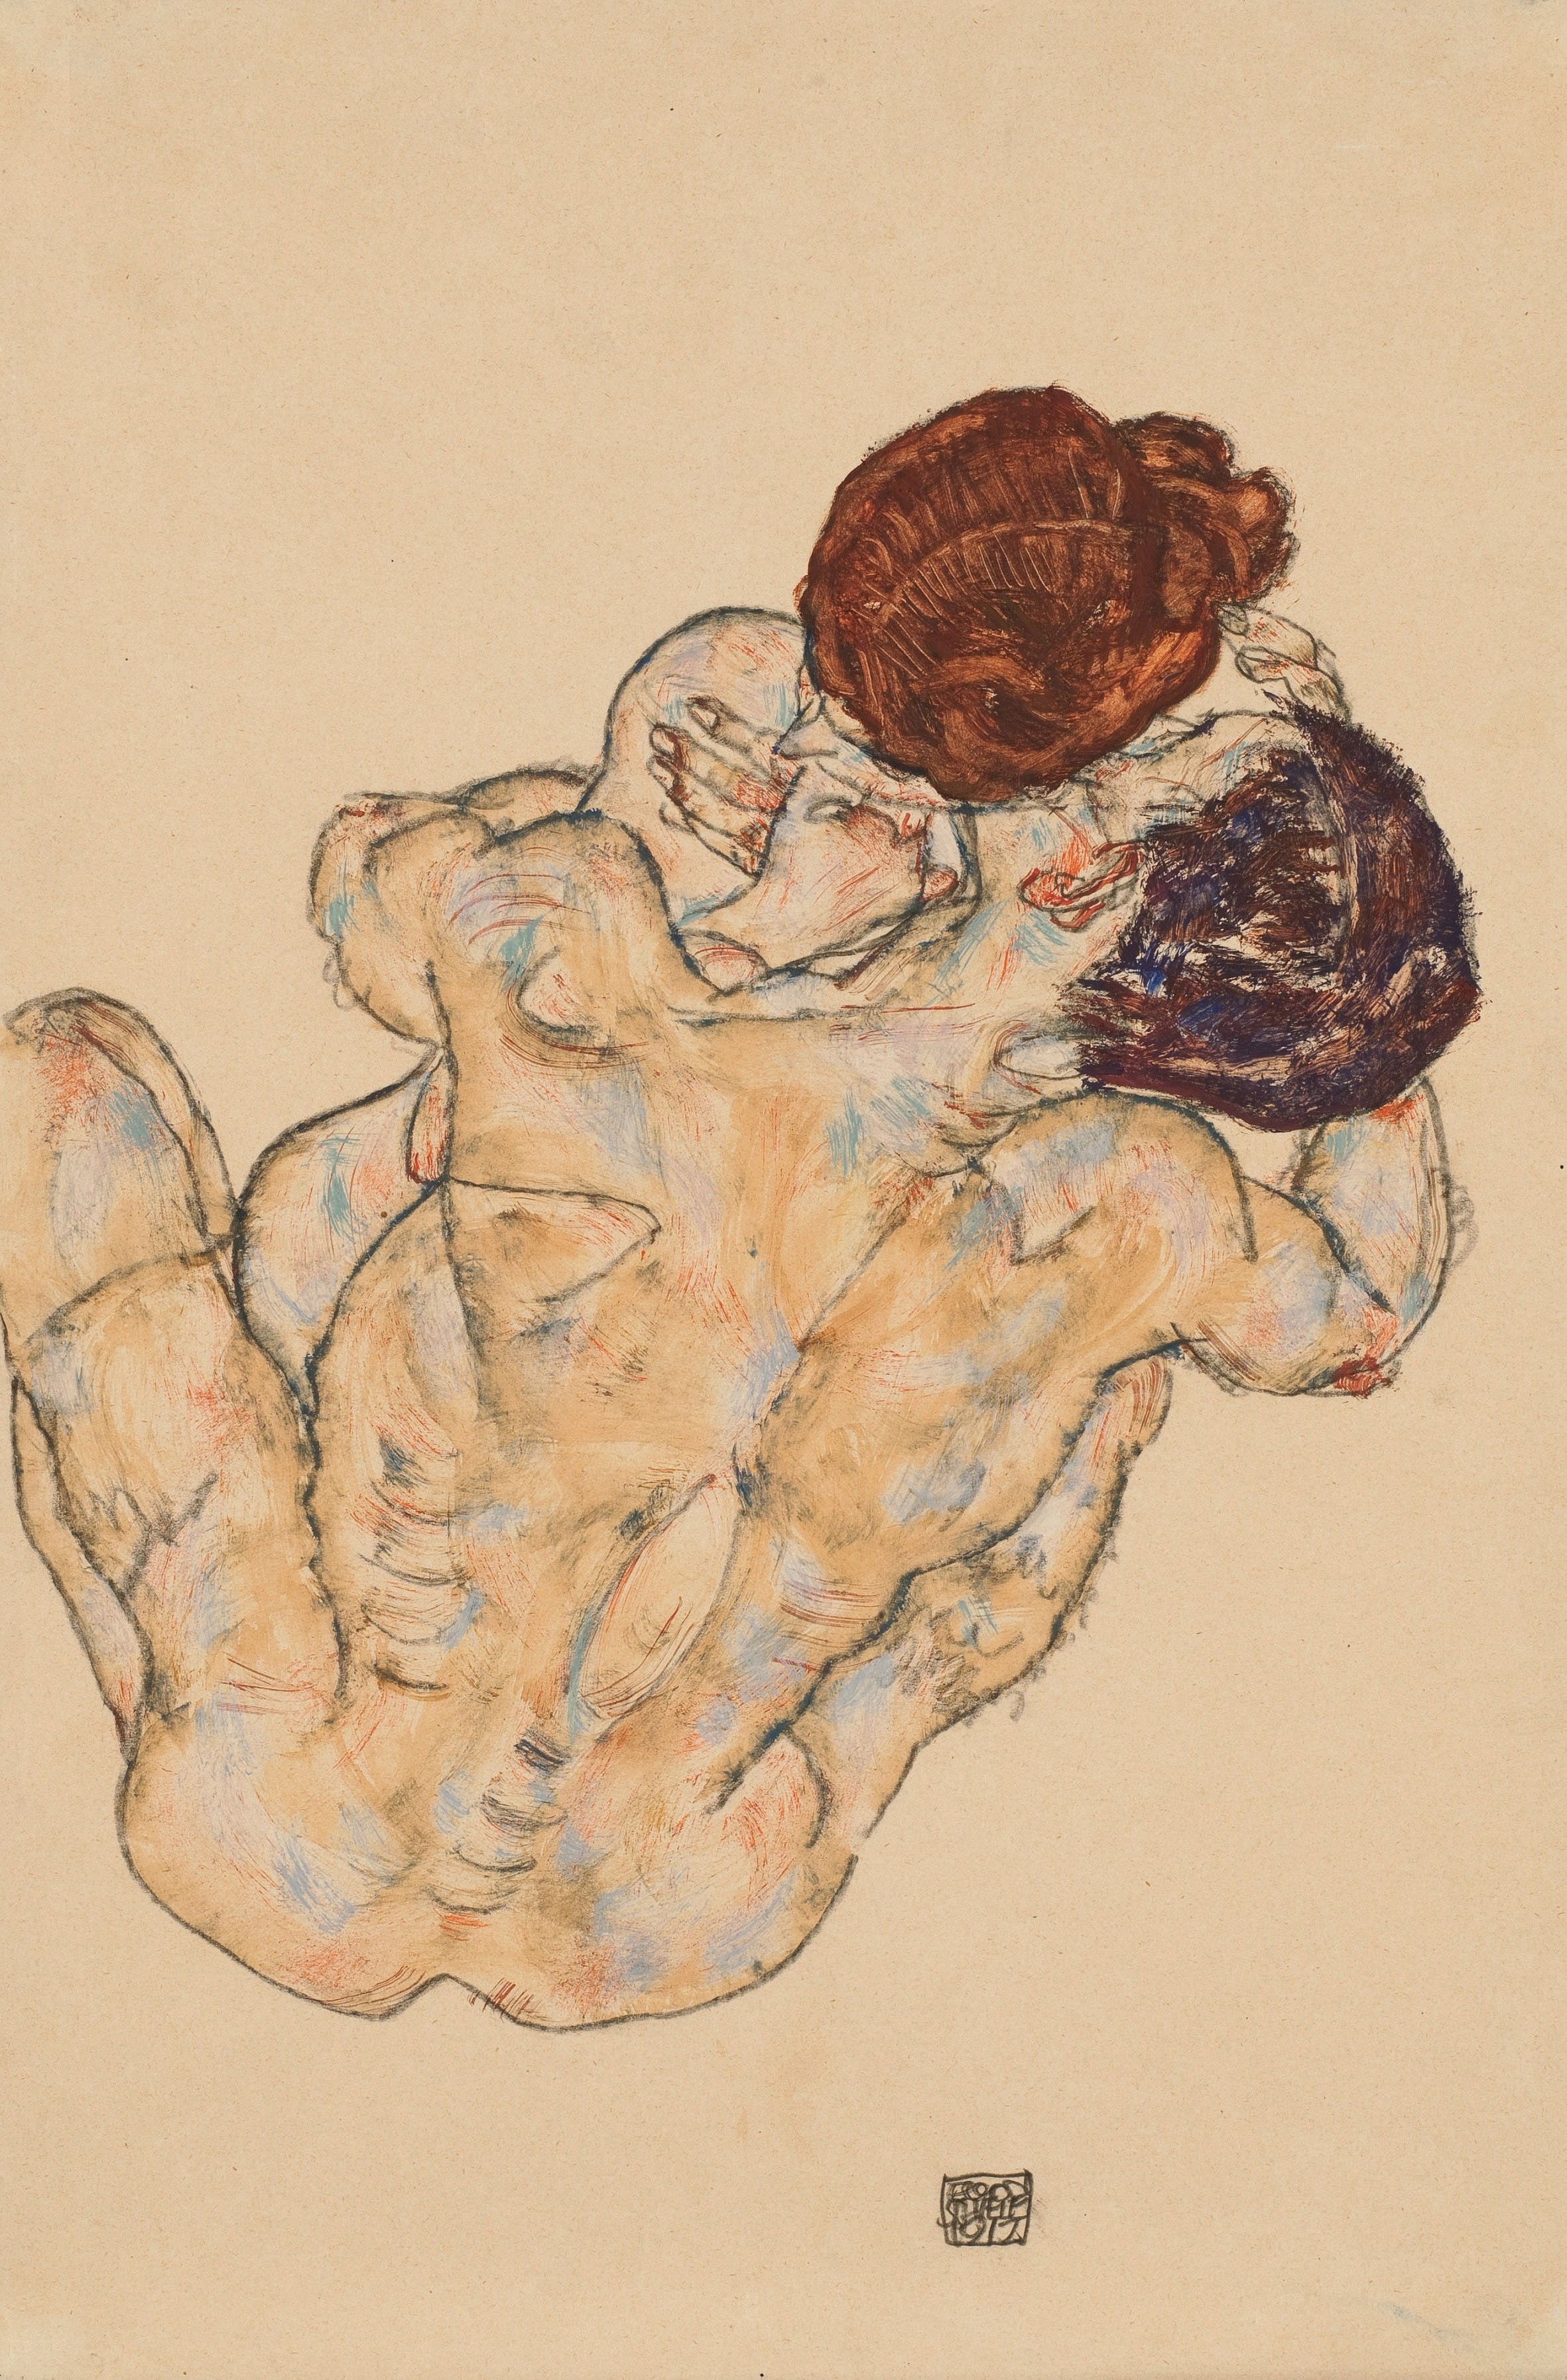 O Abraço by Egon Schiele - 1917 - 48.9 x 28.9 cm coleção privada